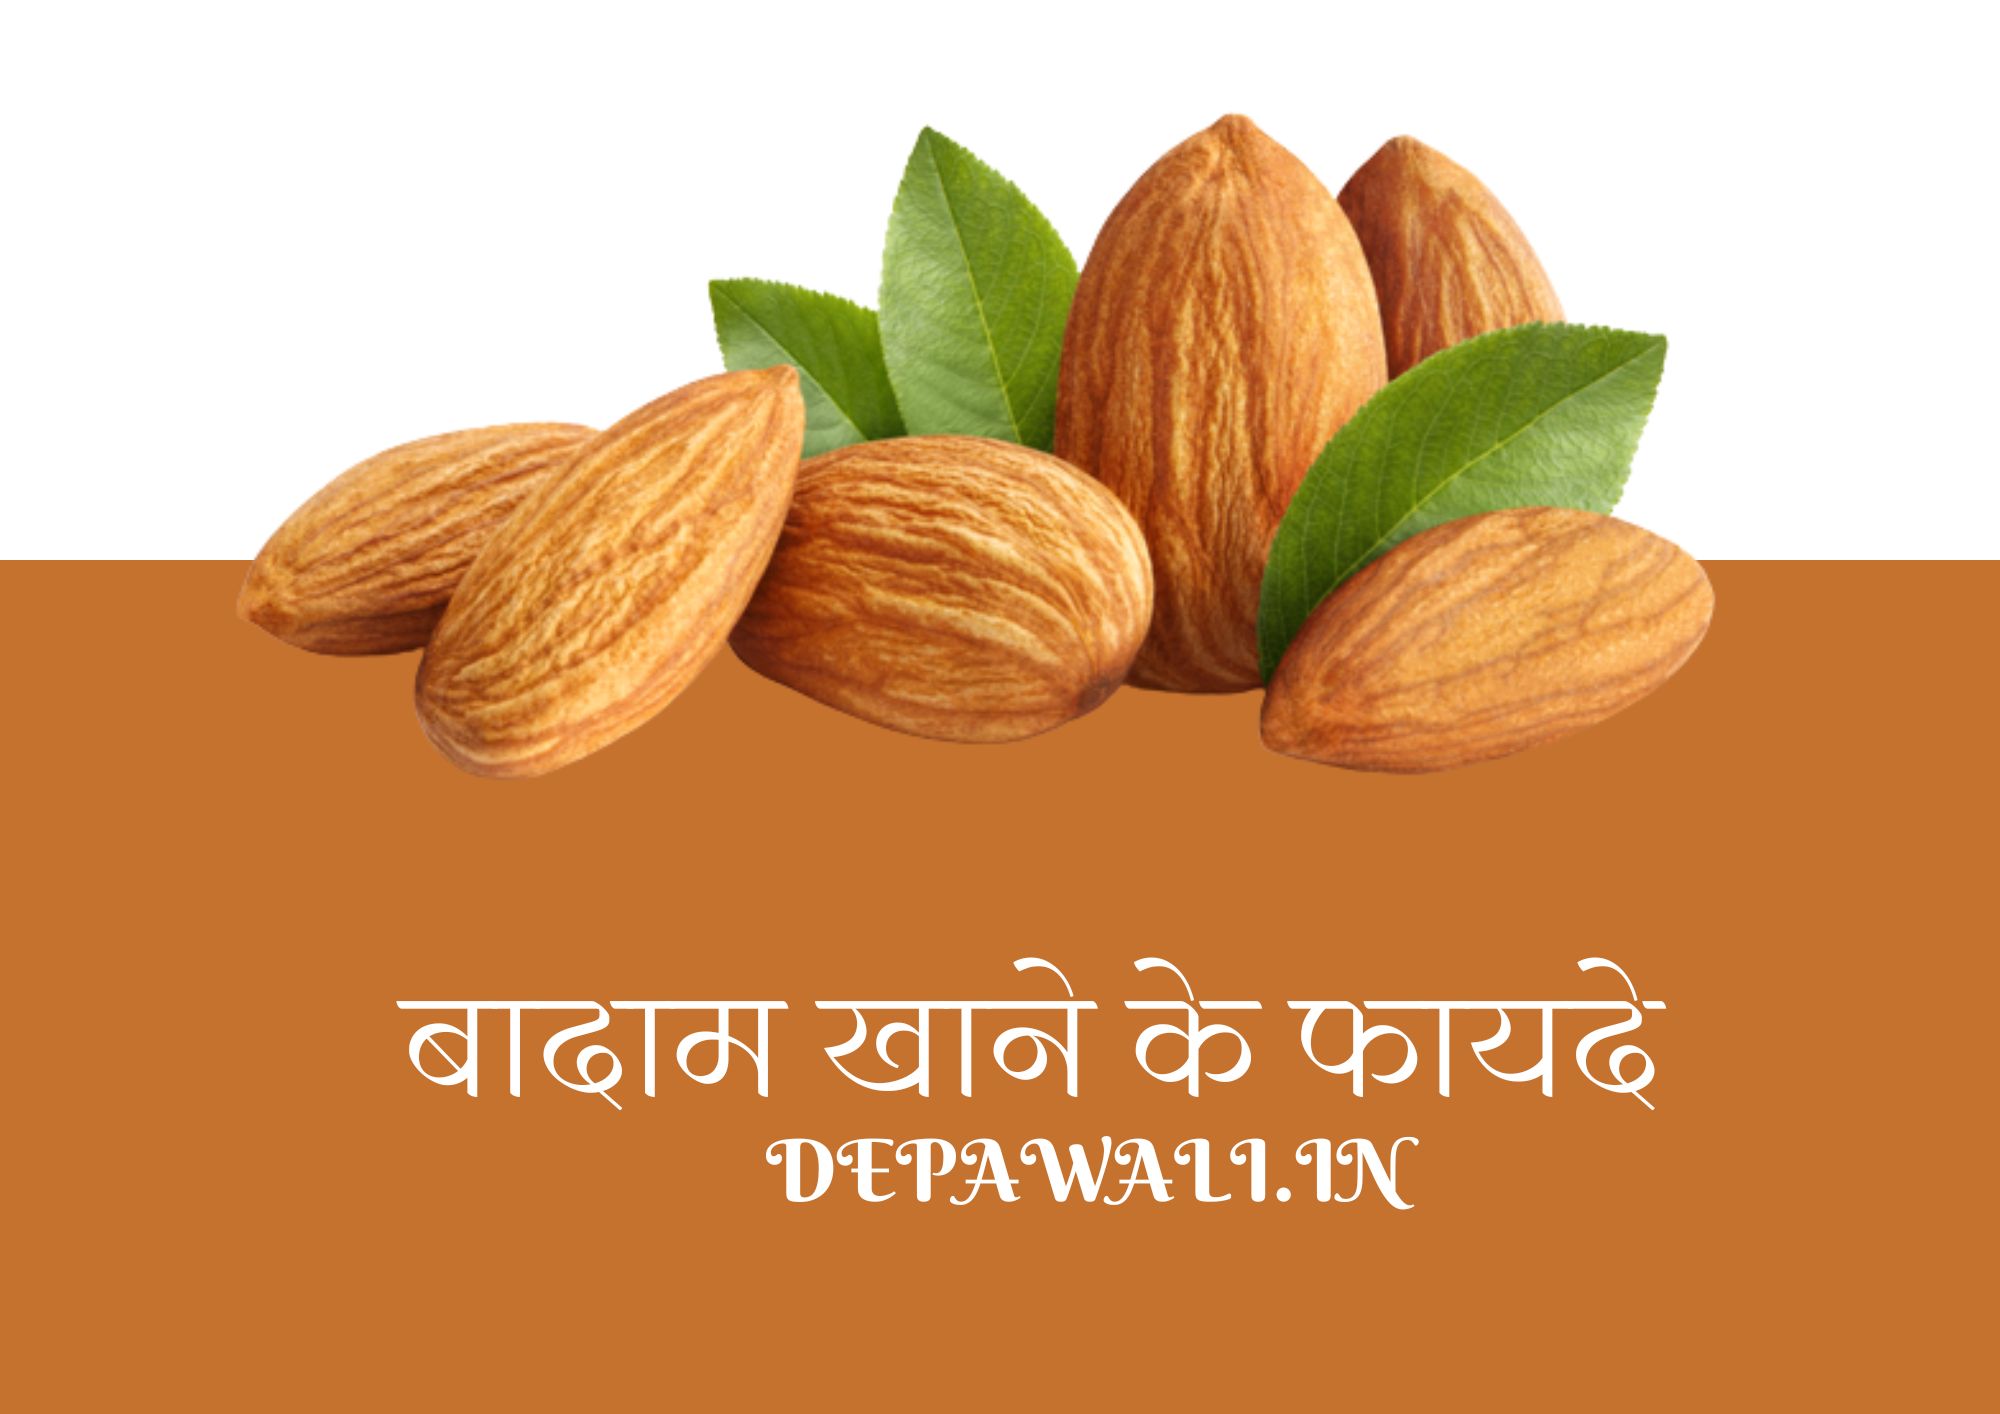 बादाम खाने के फायदे क्या होते है (Benefits Of Almonds In Hindi) - Badam Benefits In Hindi - Badam Khane Ke Fayde In Hindi